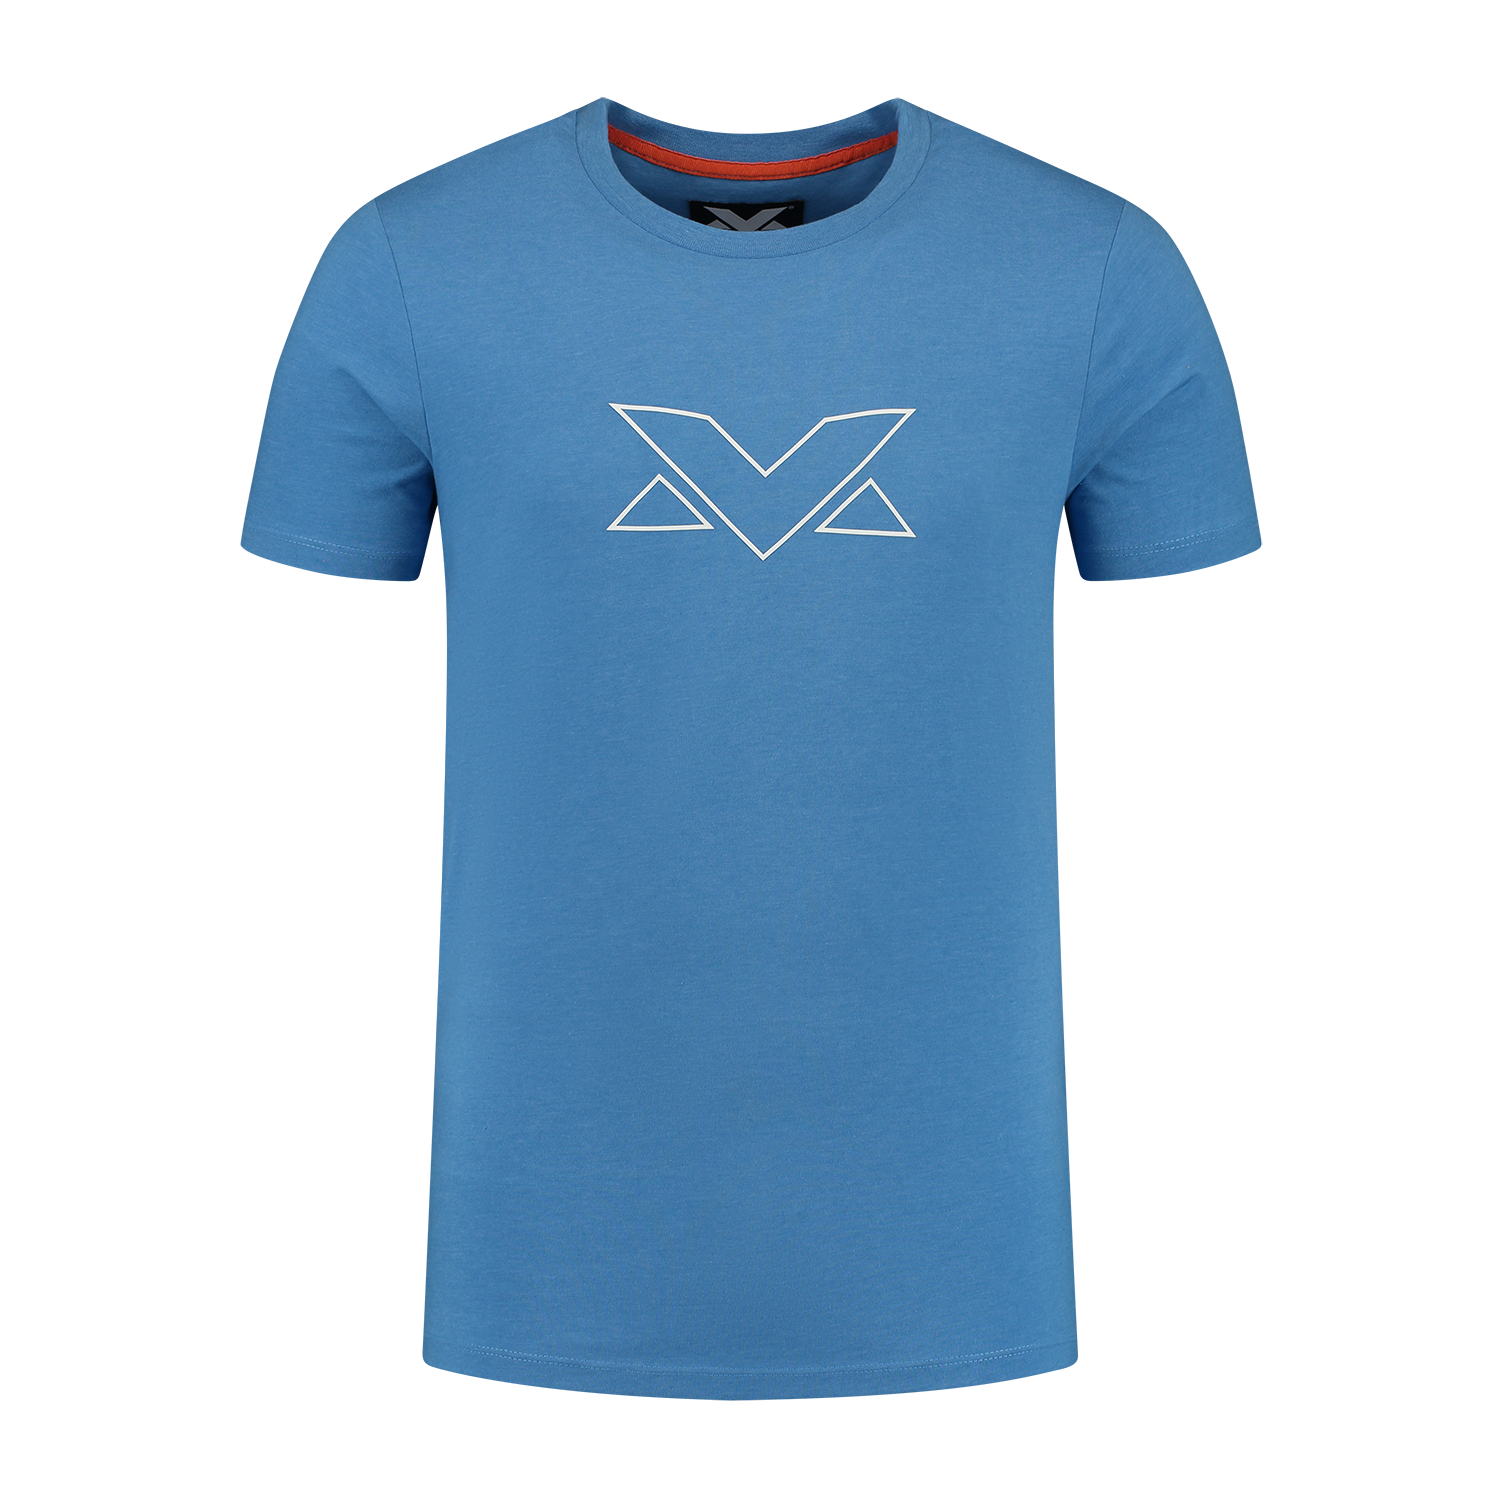 MV Logo T-shirt - Blauw - XL - Max Verstappen